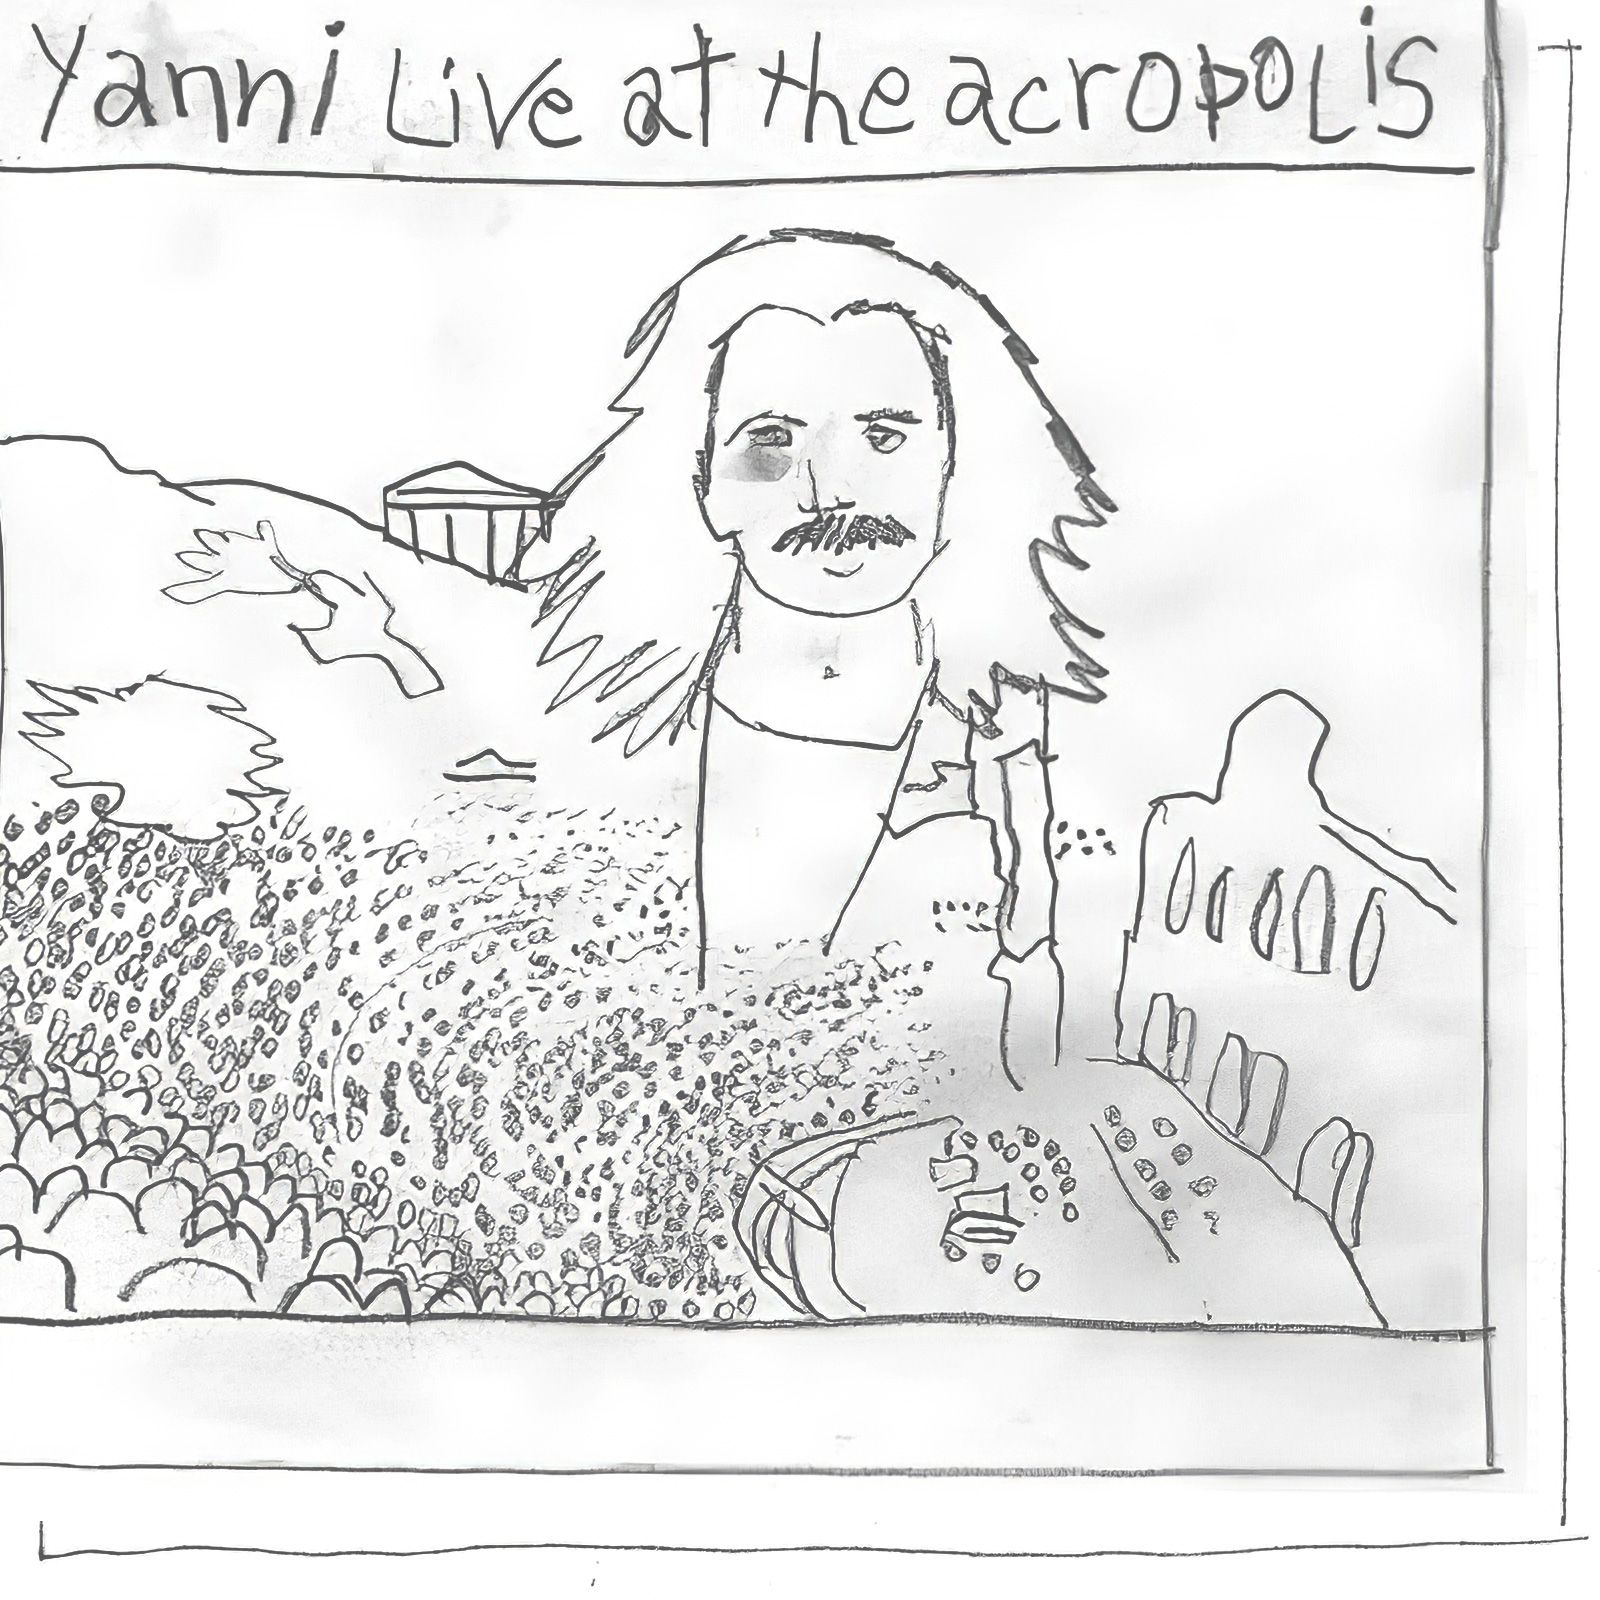 Yanni Live at the Acropolis album art